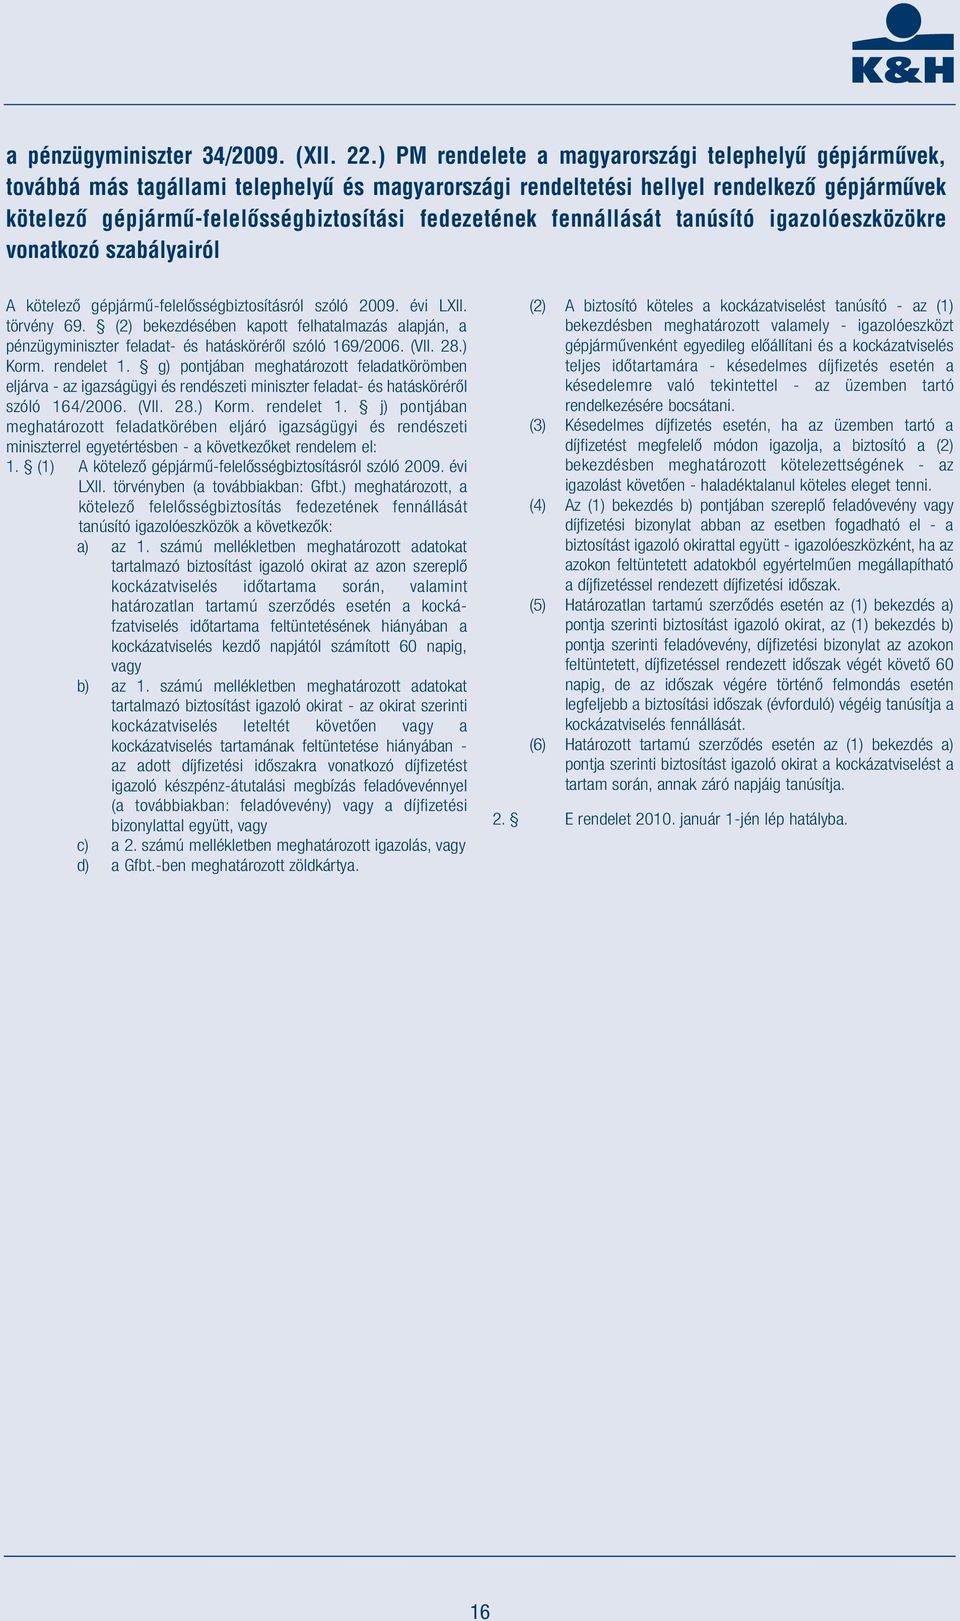 fedezetének fennállását tanúsító igazolóeszközökre vonatkozó szabályairól A kötelező gépjármű-felelősségbiztosításról szóló 2009. évi LXII. törvény 69.